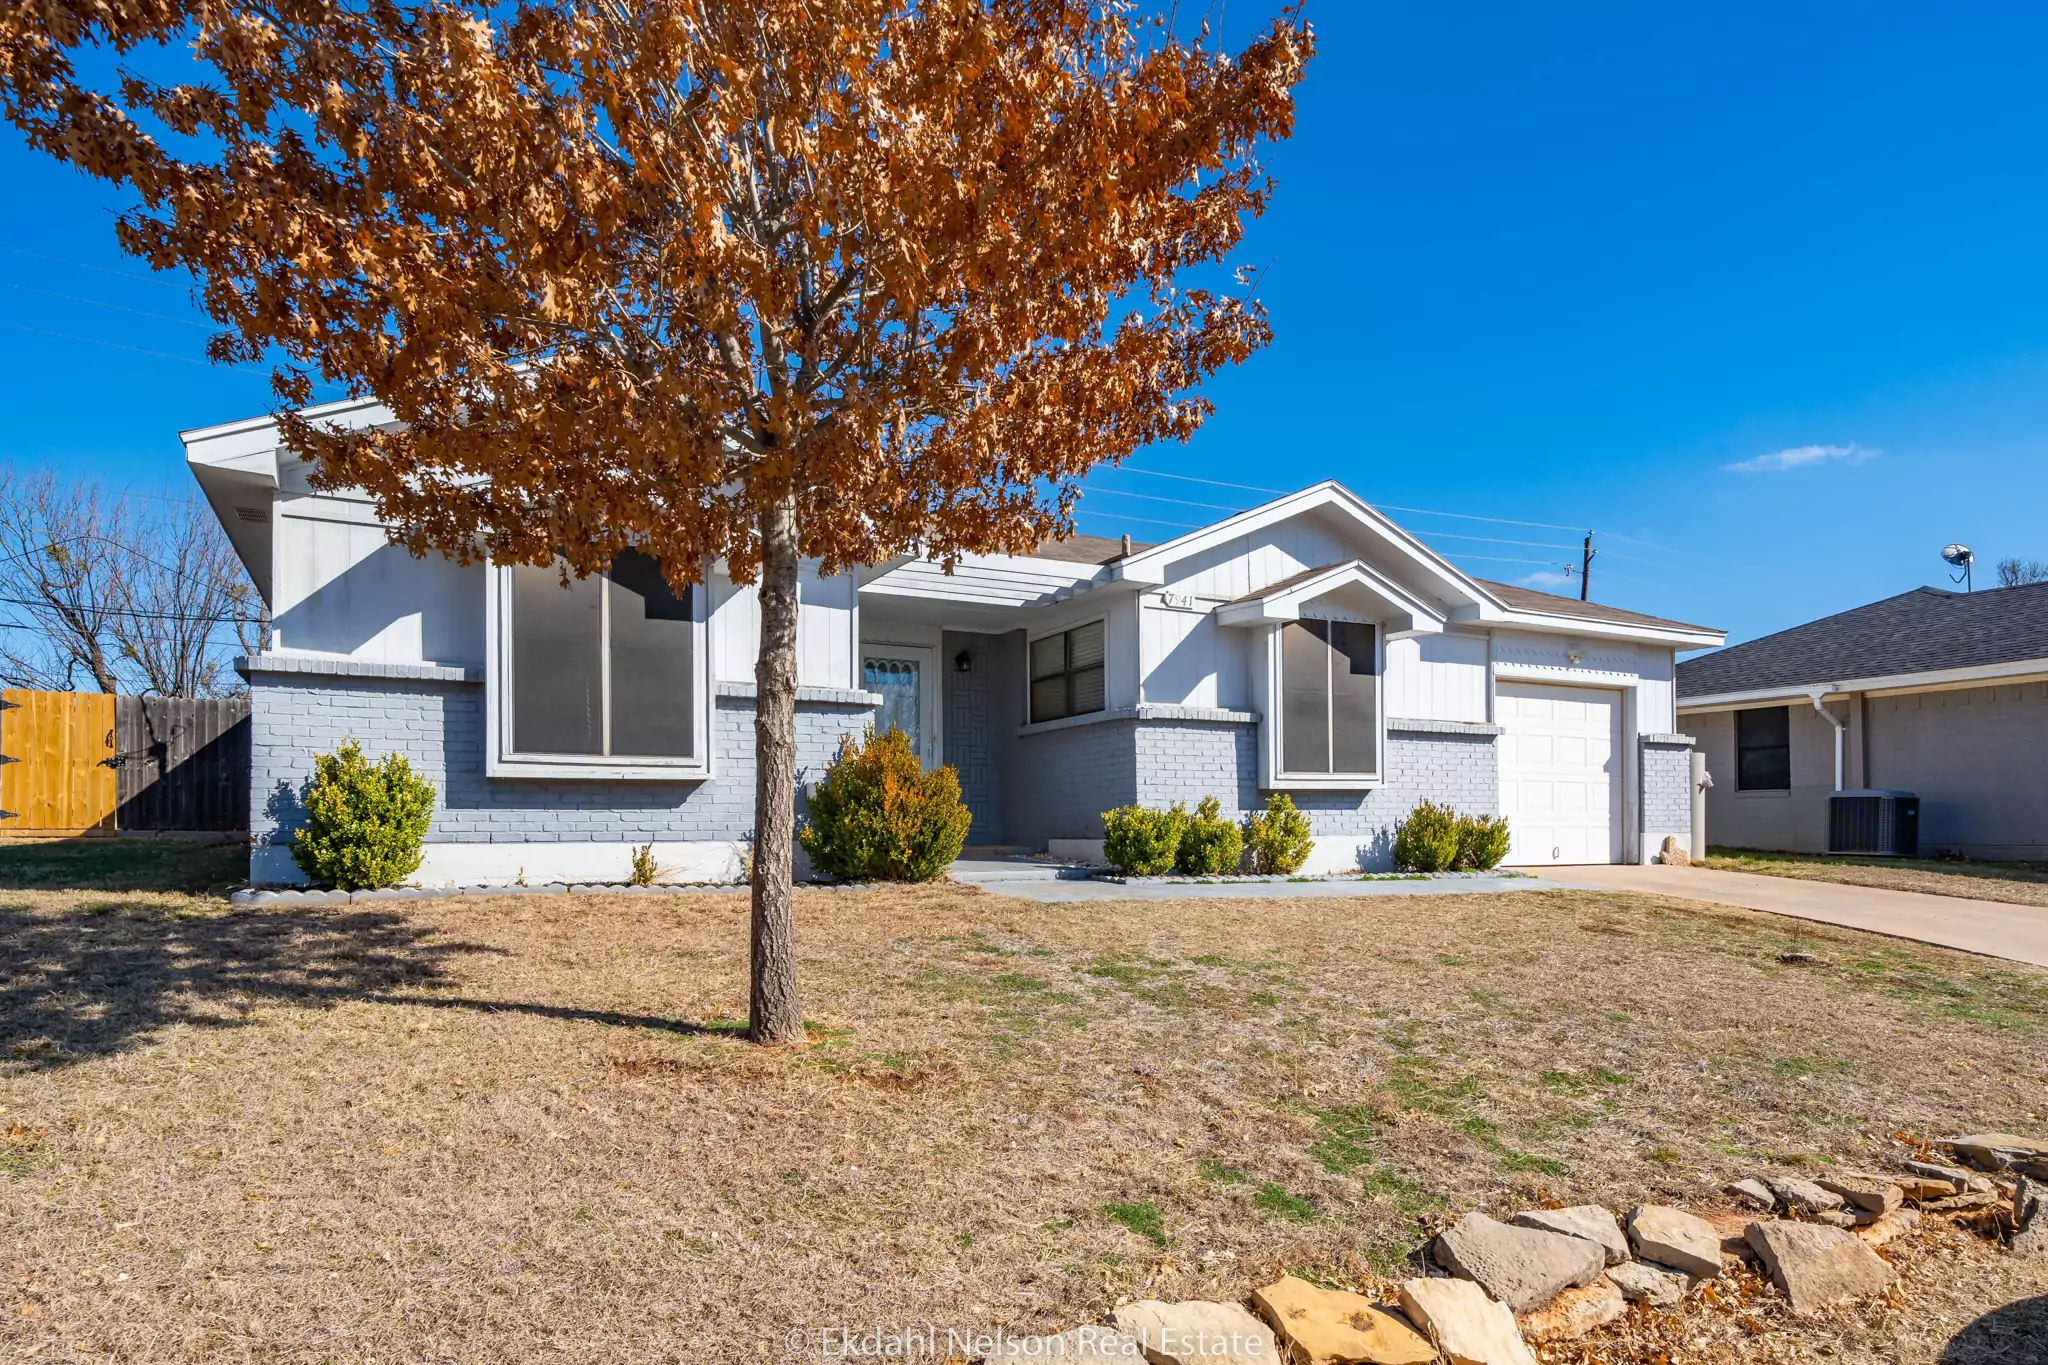 House For Sale Abilene TX - ekdah nelson real estate